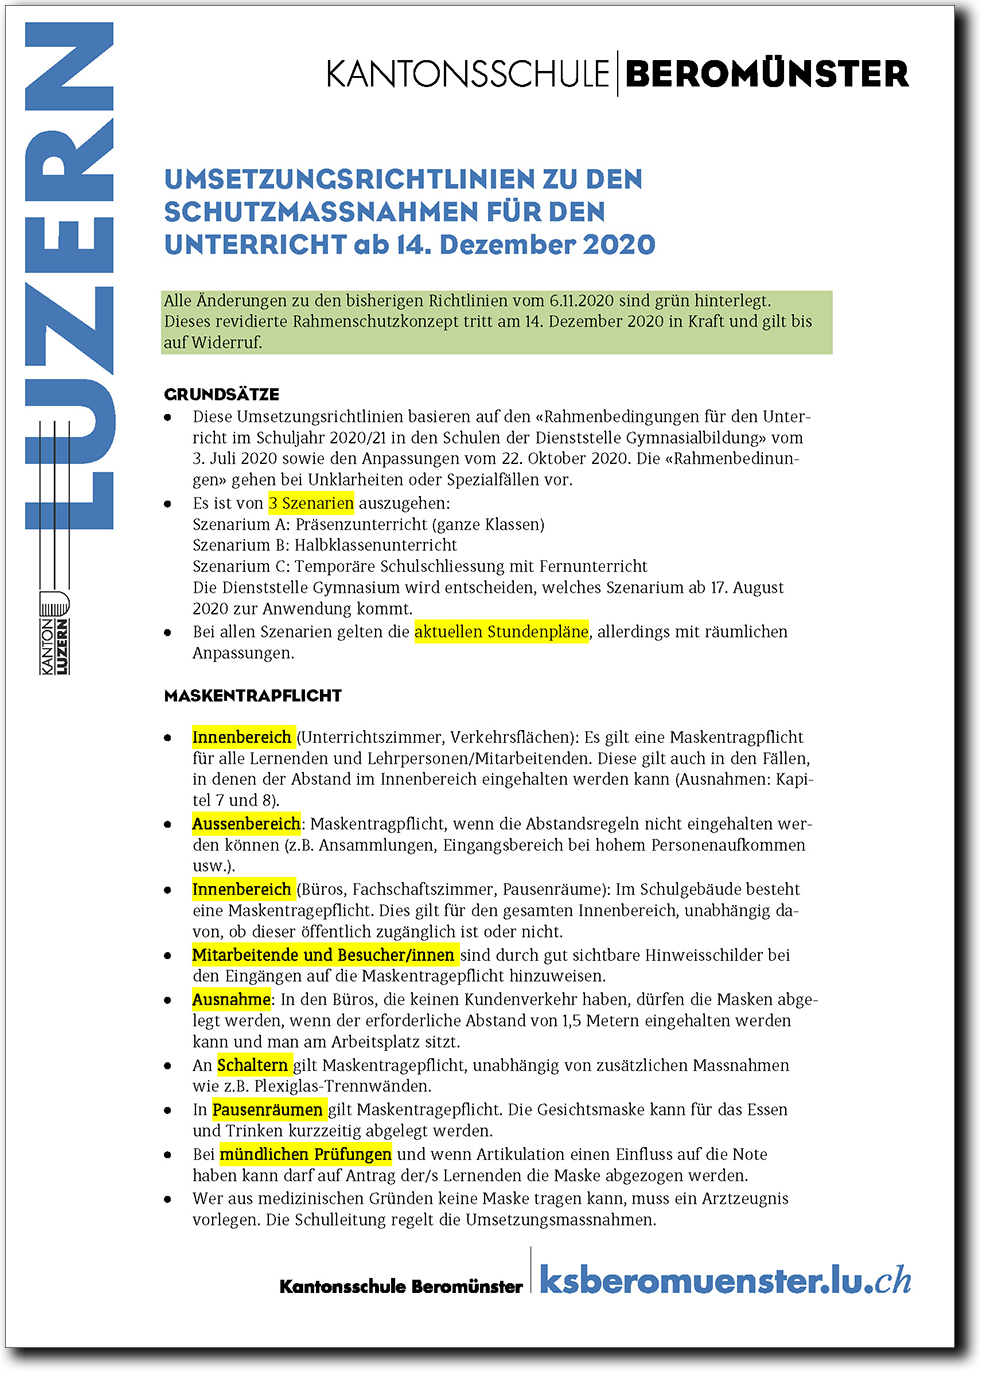 Bild Titel Umsetzungsrichtlinien KSBer Dez 2020